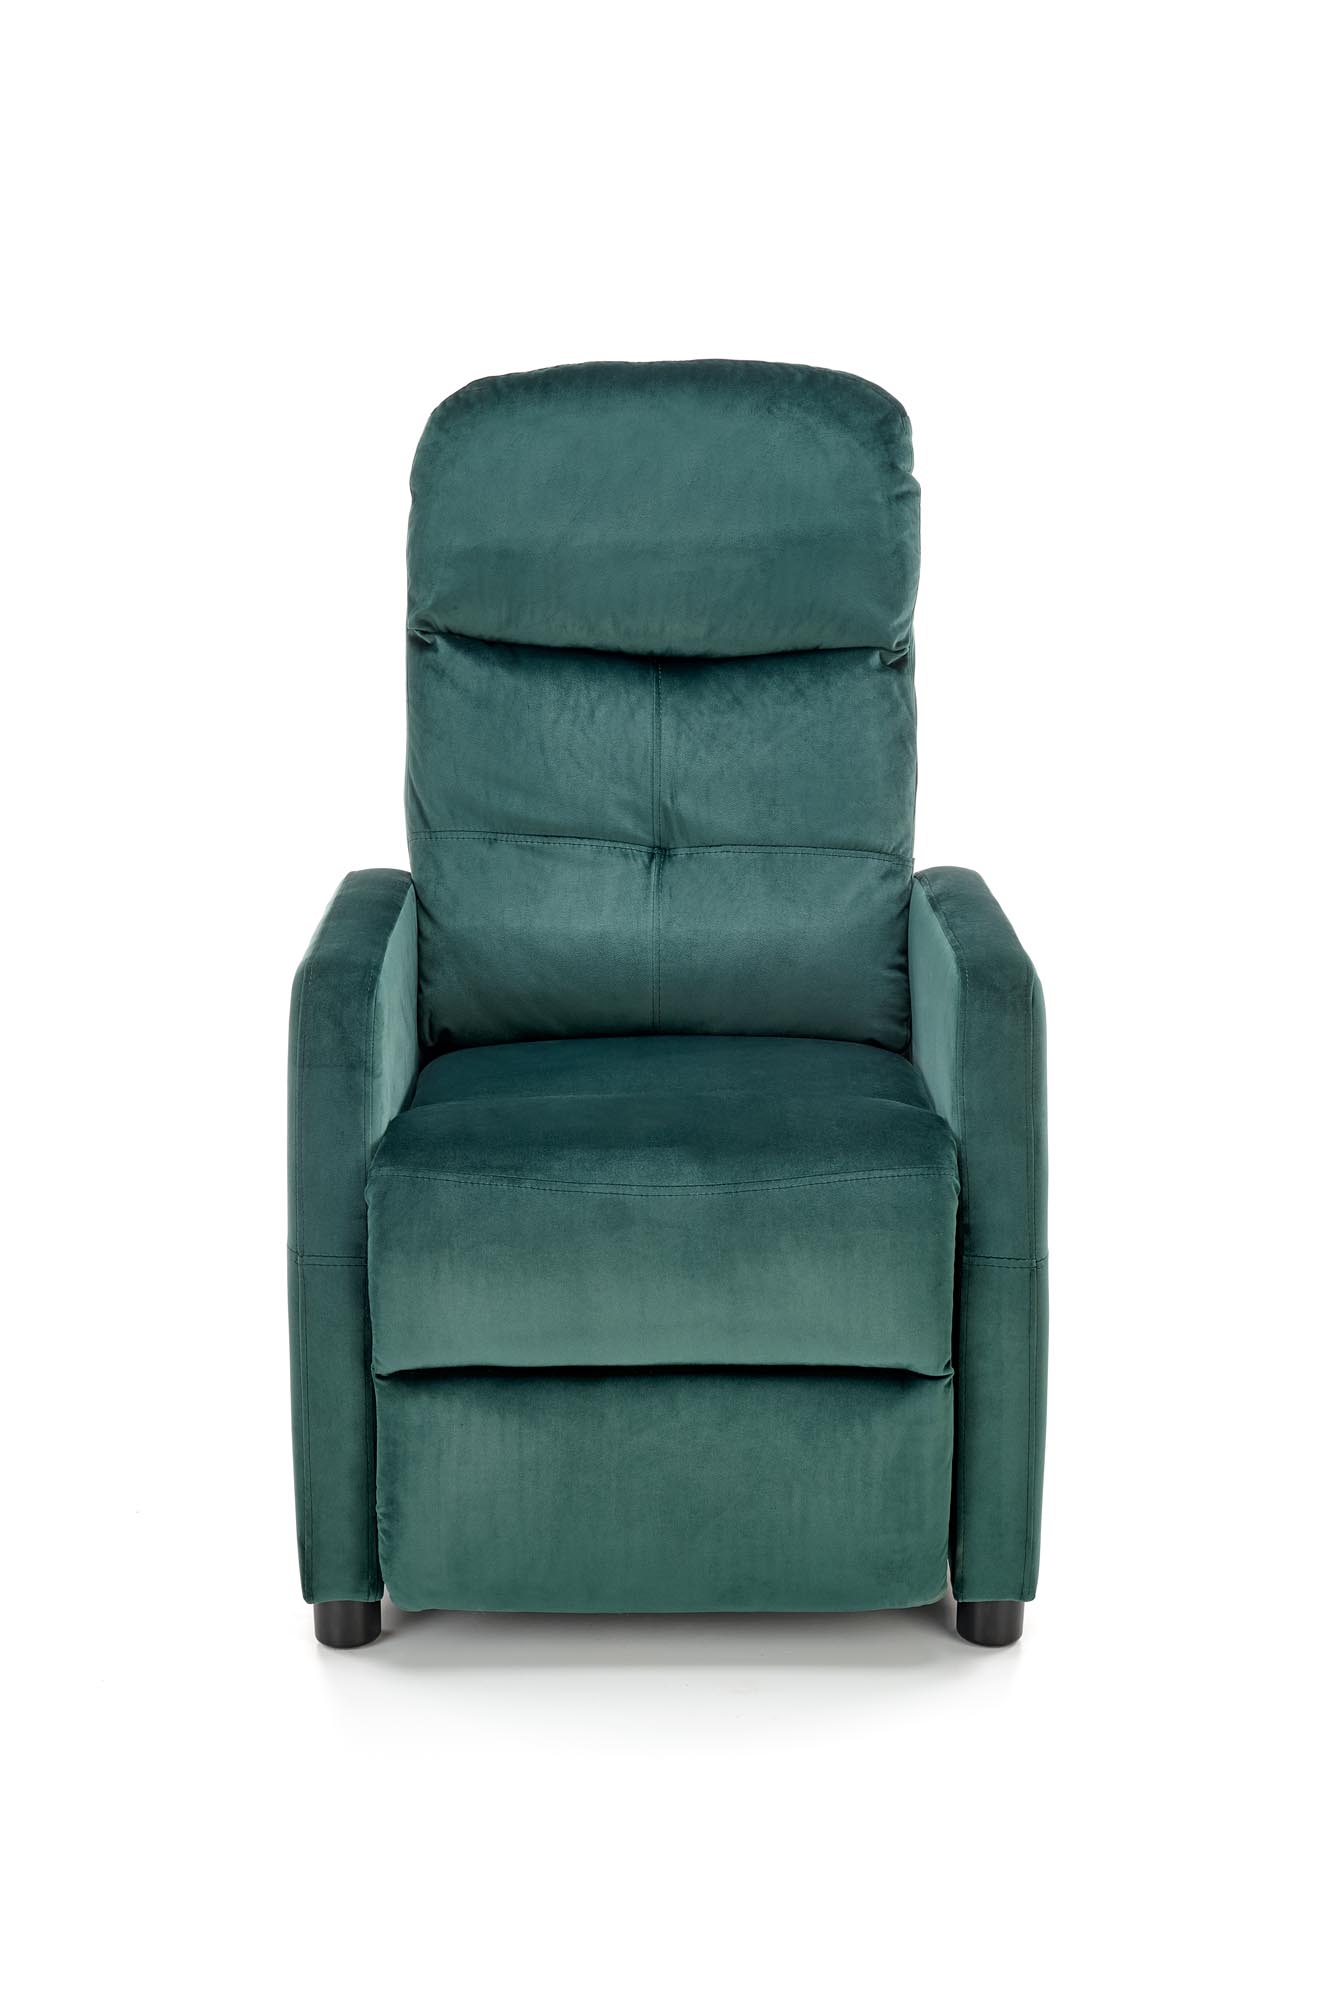 FELIPE 2 fotel wypoczynkowy ciemny zielony, BLUVEL #78 felipe 2 fotel wypoczynkowy ciemny zielony, bluvel #78